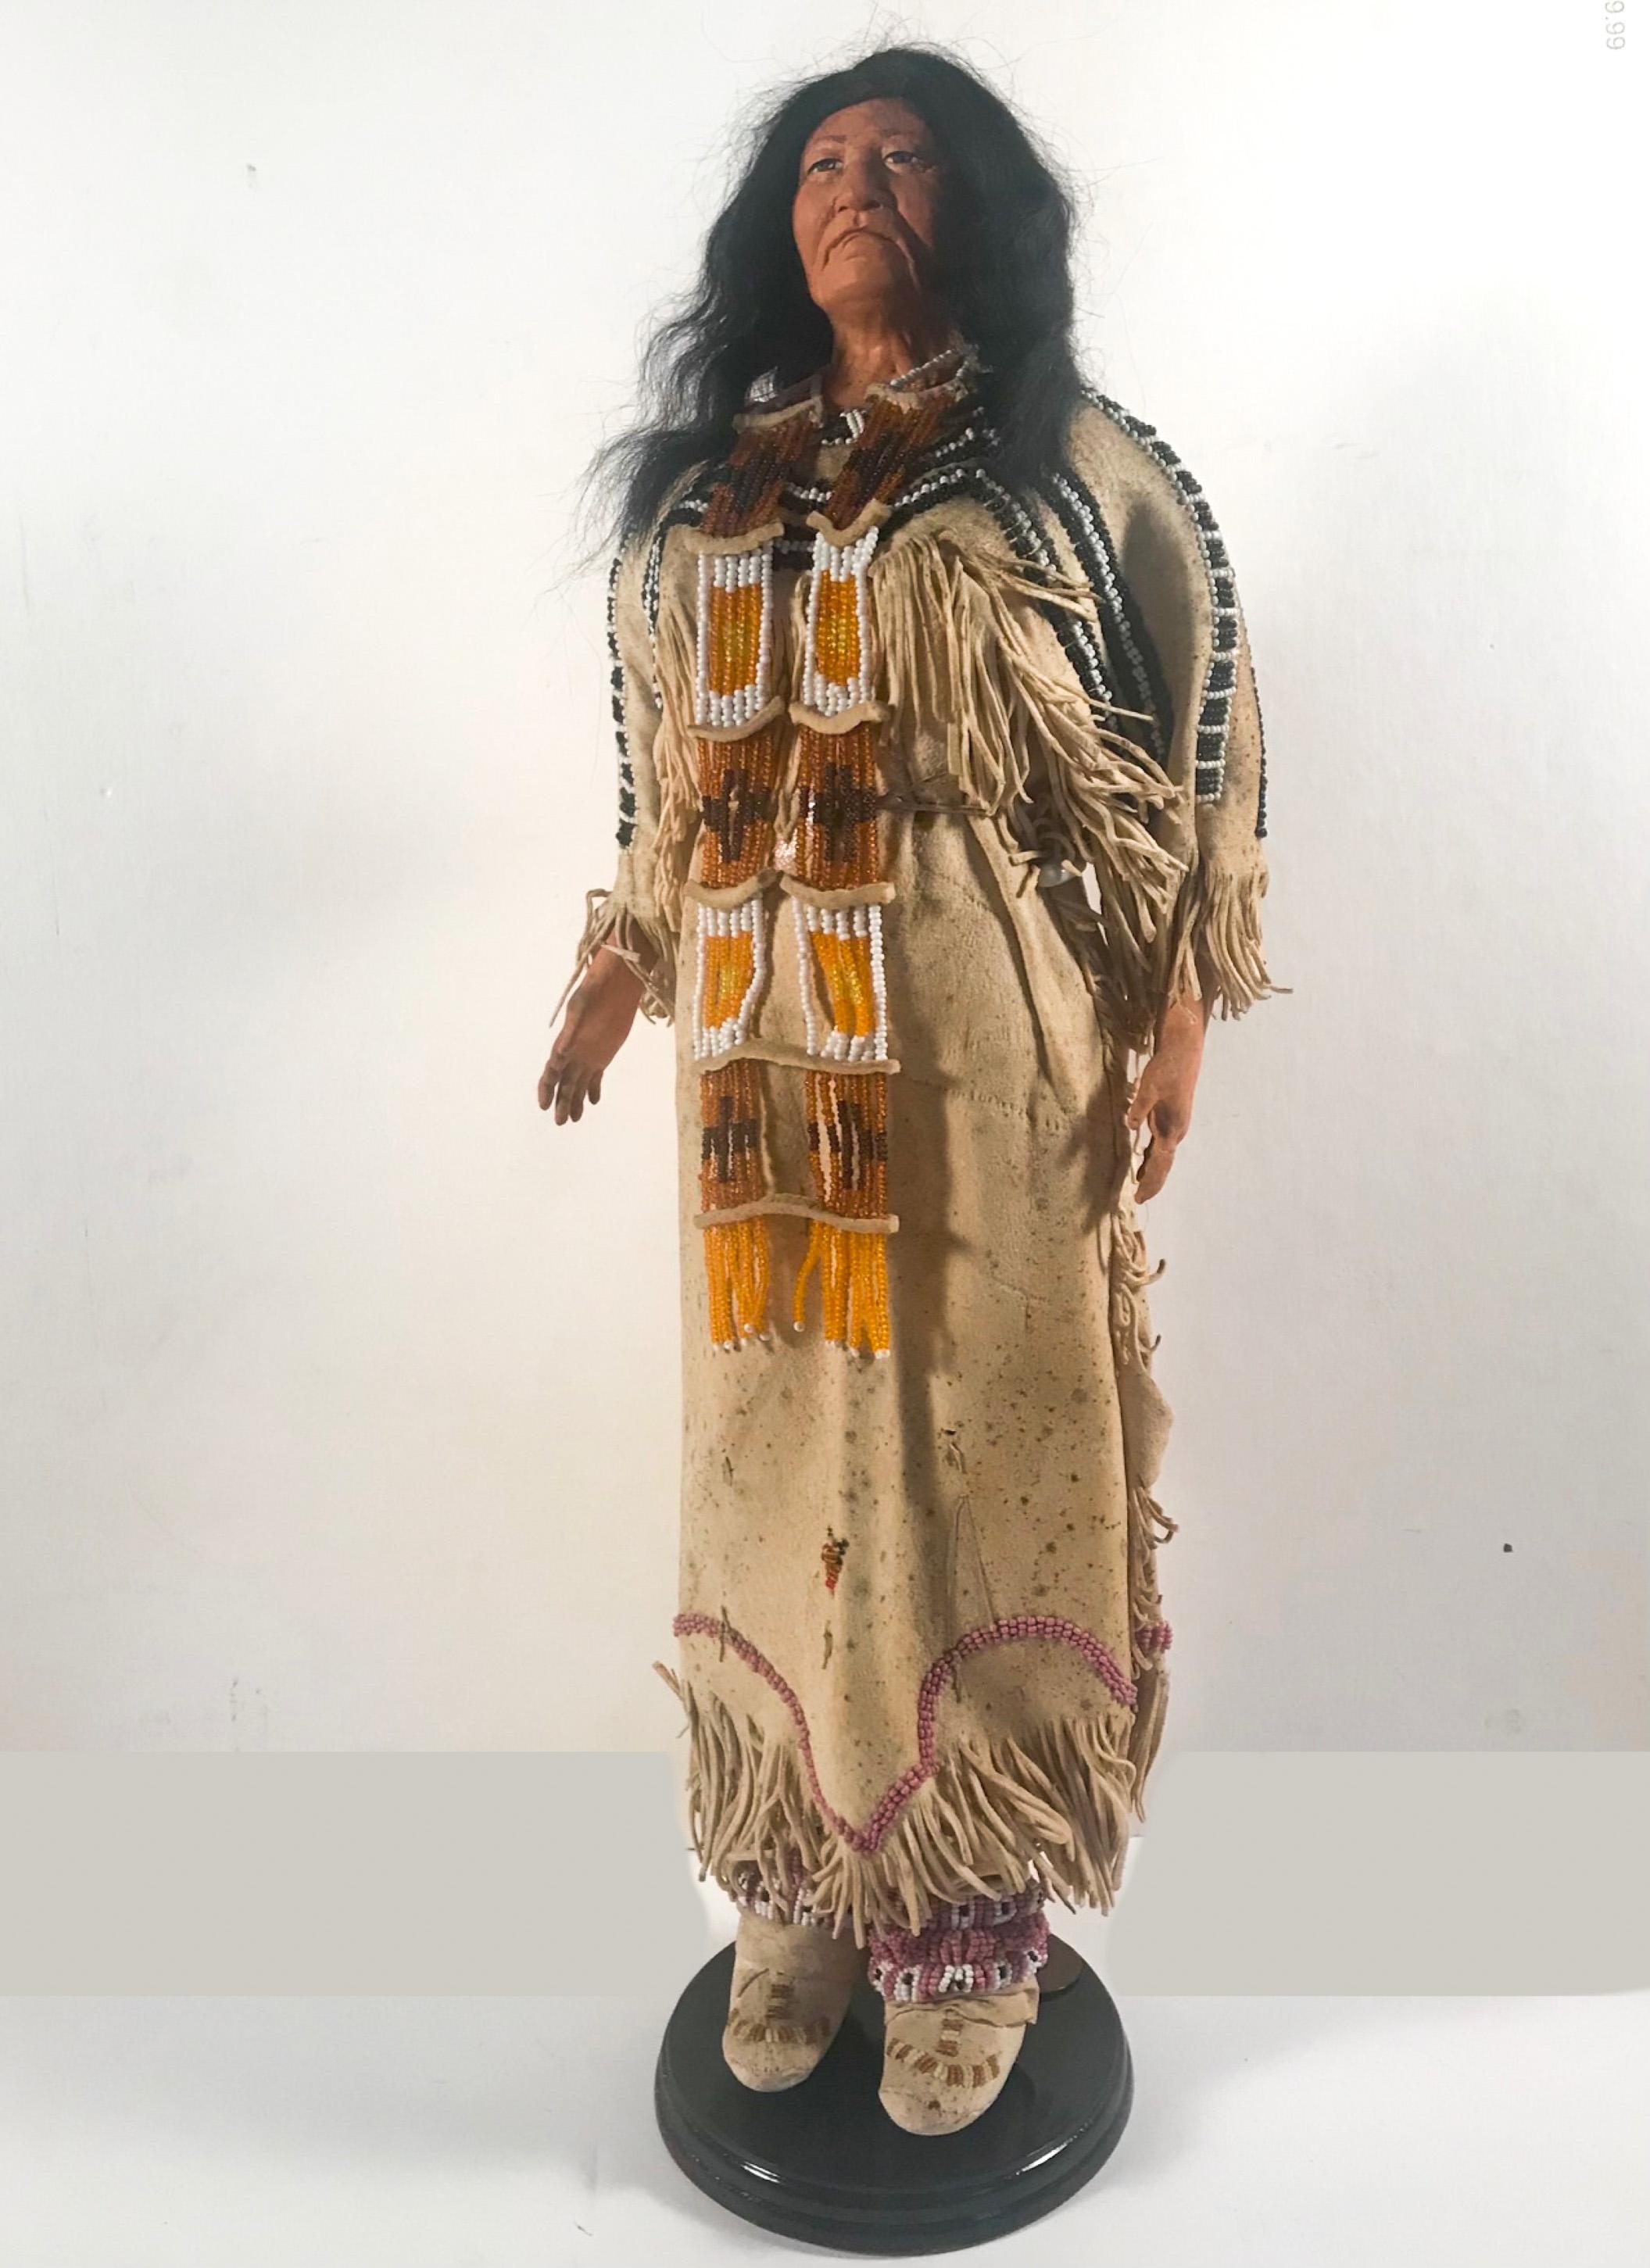 Indianerpuppe mit traditionellem Lakota Sioux Cherokee Hochzeitskleid mit Perlenstickerei, Unikat

Dies ist eine authentische indianische, in Amerika hergestellte lebensechte Puppe für Erwachsene. Sie hat ein Gesicht und Hände aus kunstvoll